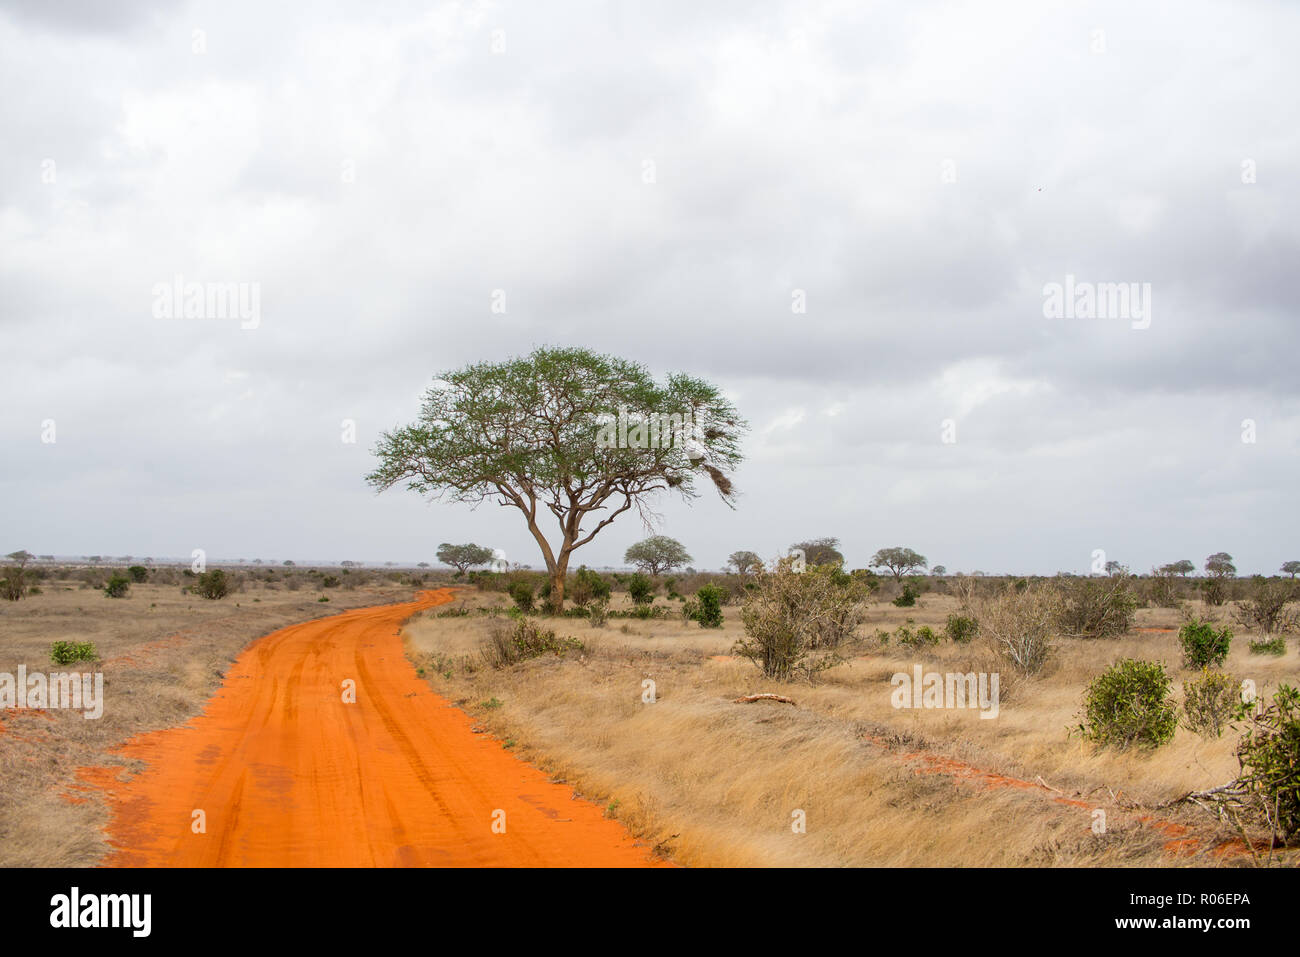 Rot Braun unbefestigte Straße durch die Savanne in Tsavo Ost Nationalpark, Kenia, Afrika Stockfoto